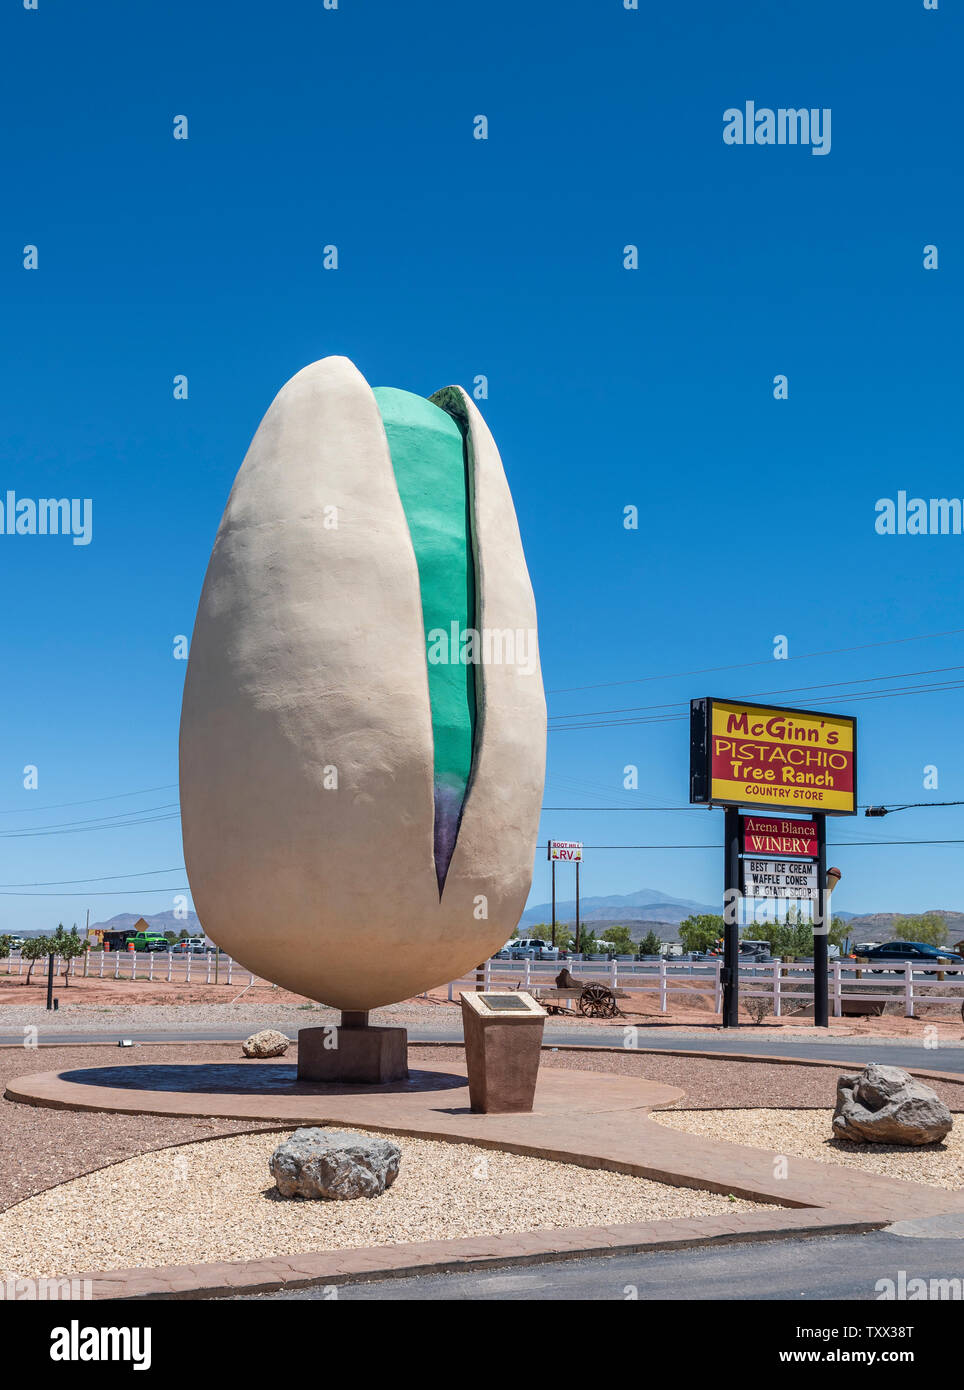 Alamogordo, Nuovo Messico, gigante pistacchio, mondi più grande di pistacchio attrazione sul ciglio della strada a McGinns Pistacchio del ranch. Foto Stock